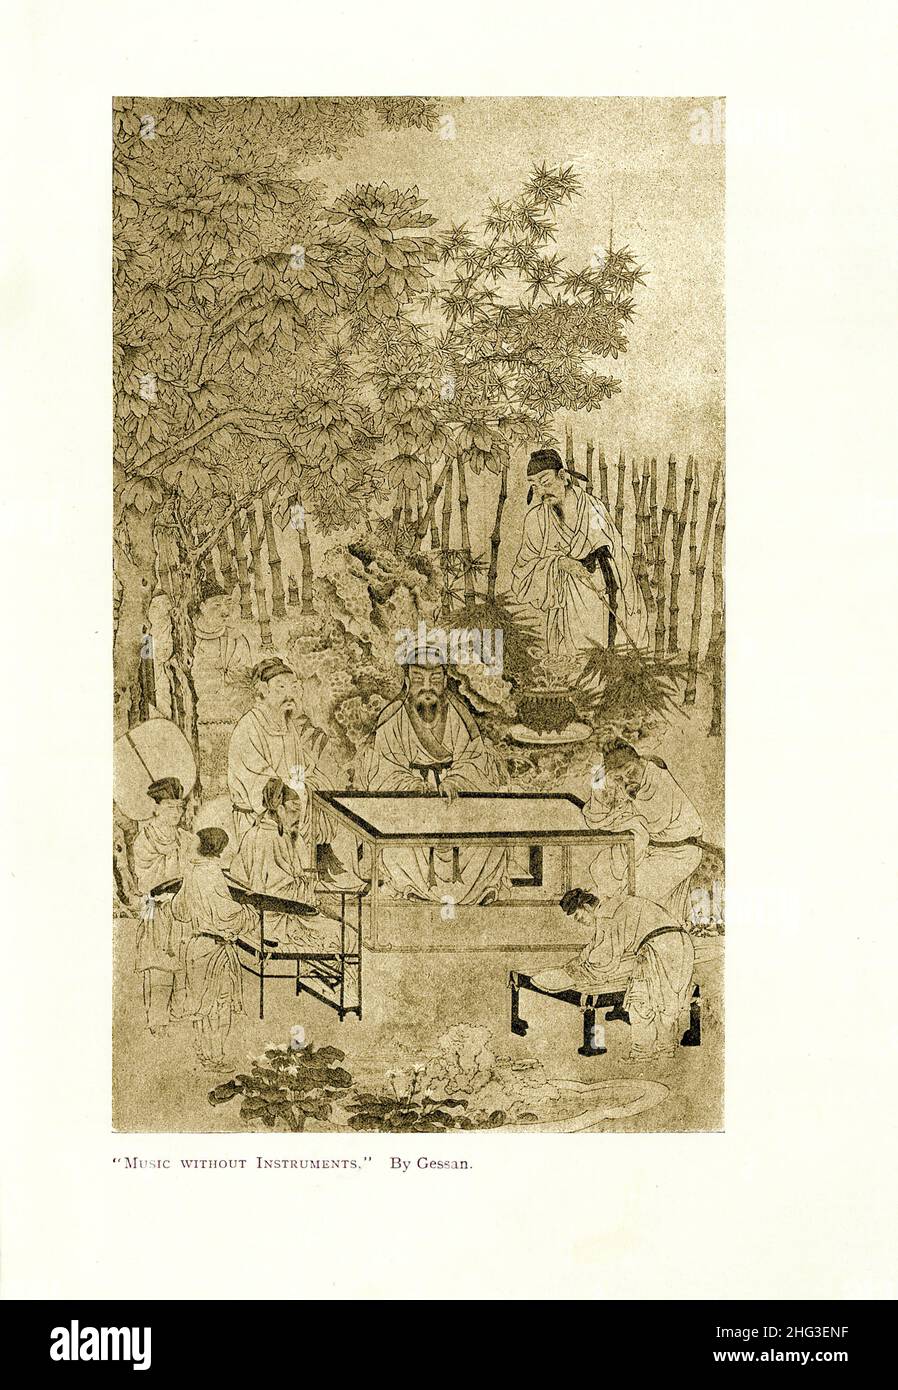 Peinture médiévale chinoise : musique sans instruments.Par Gessan.Reproduction de l'illustration du livre 1912 Banque D'Images